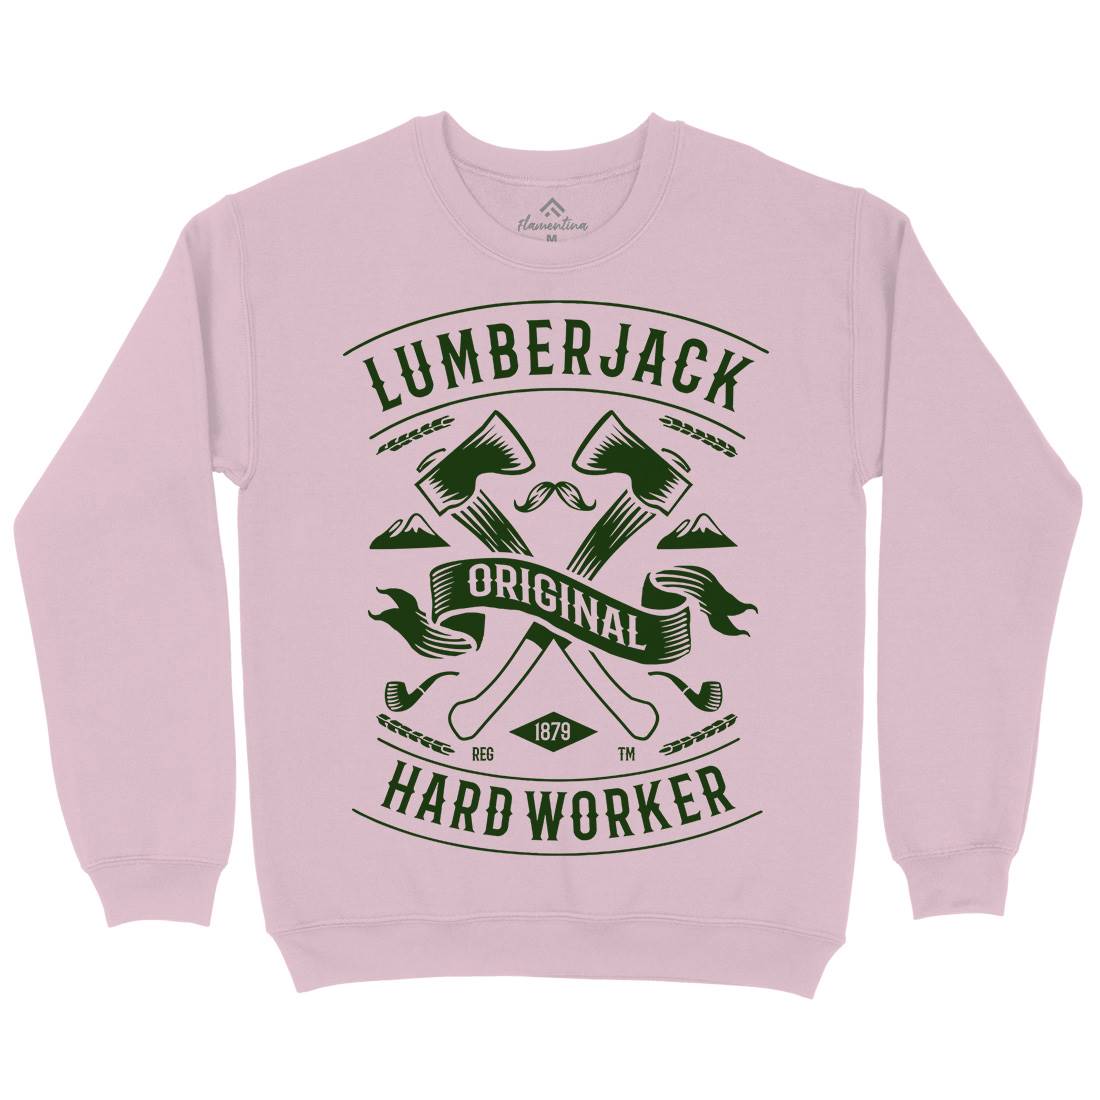 Lumberjack Kids Crew Neck Sweatshirt Retro B229